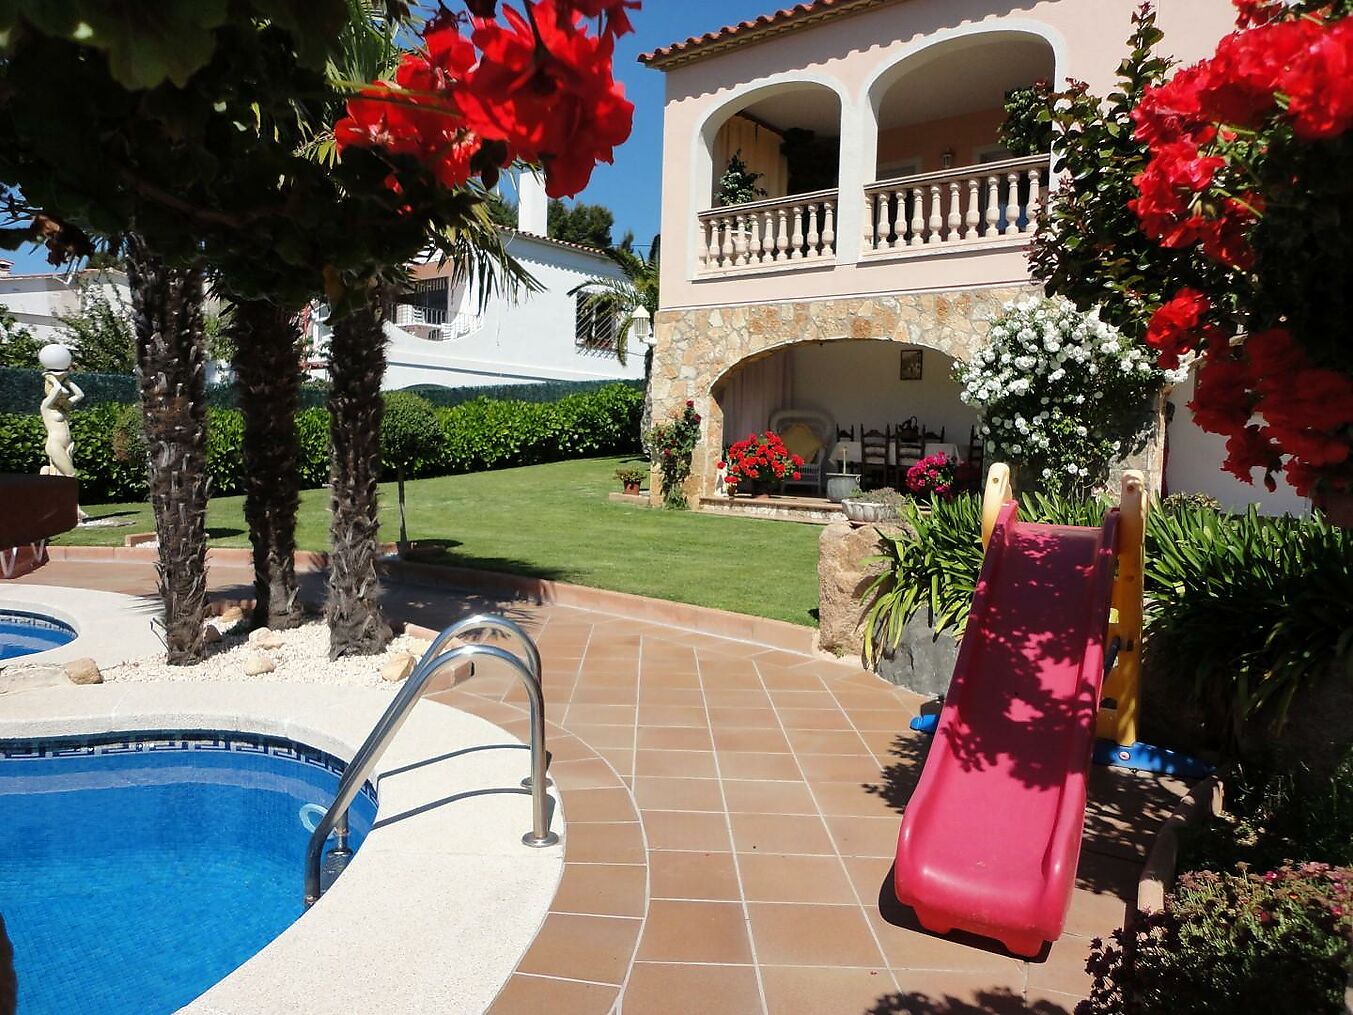 Magnificent 4 bedroom villa with sea views in exclusive S`Agaro.